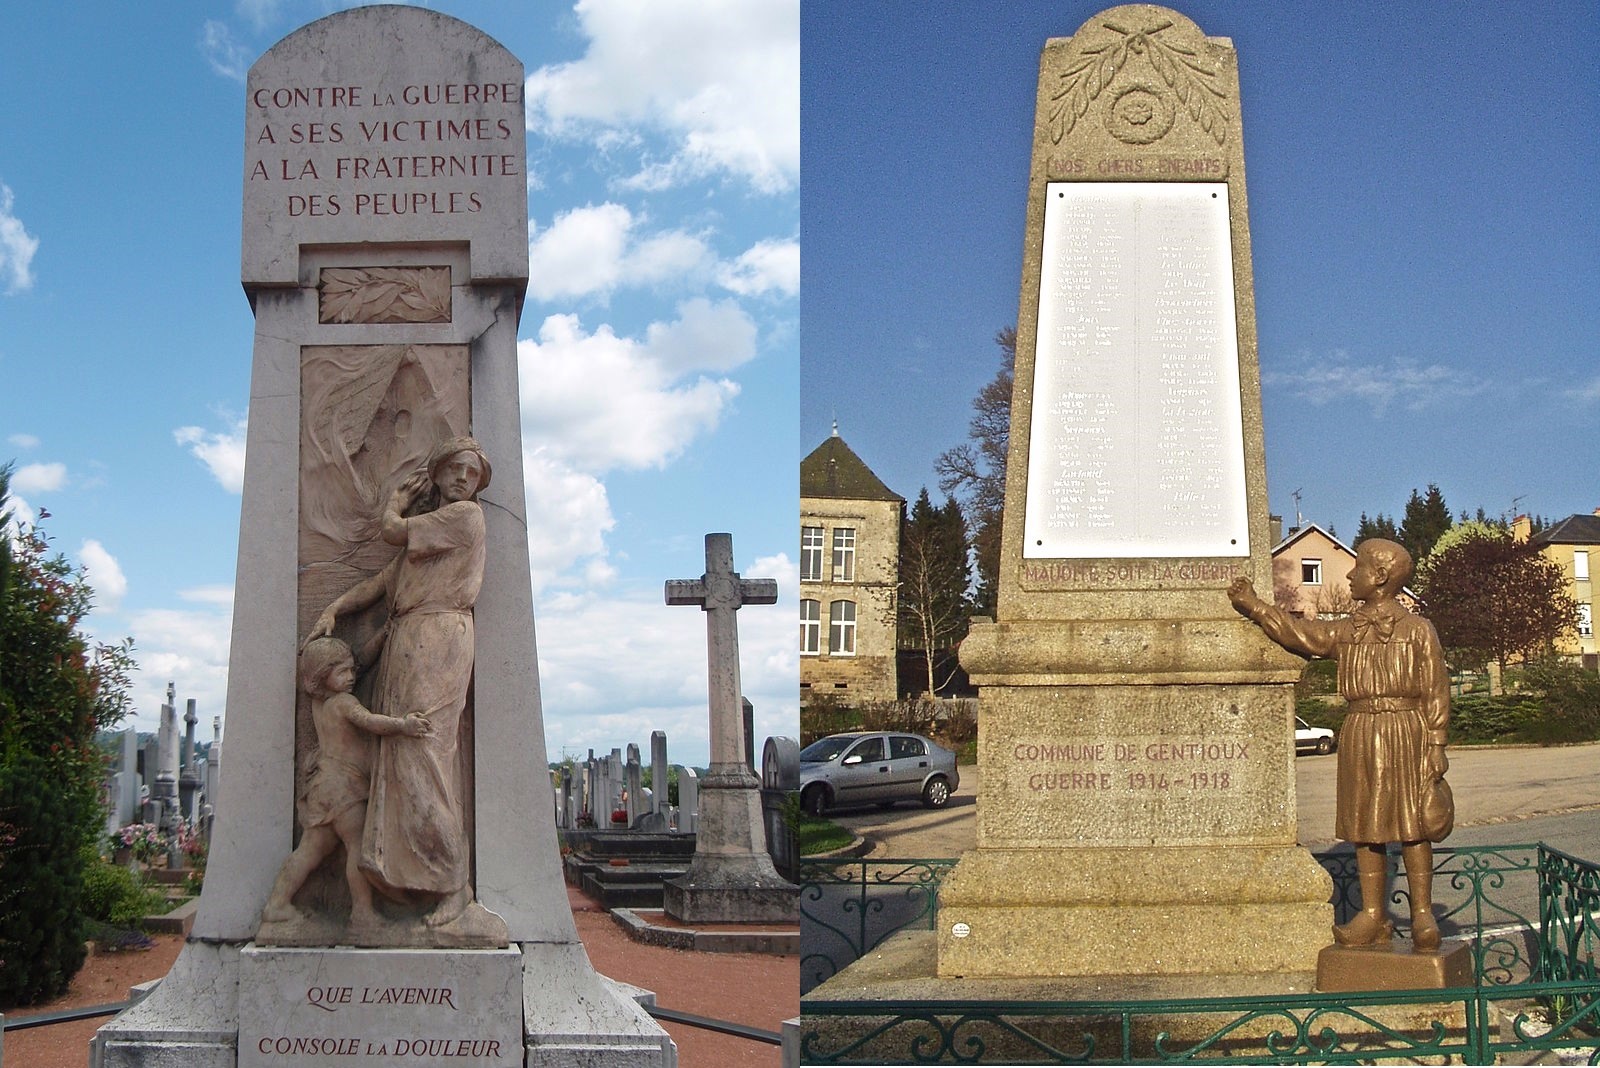 “Maudite soit la guerre”, exemples de monuments aux morts pacifistes.